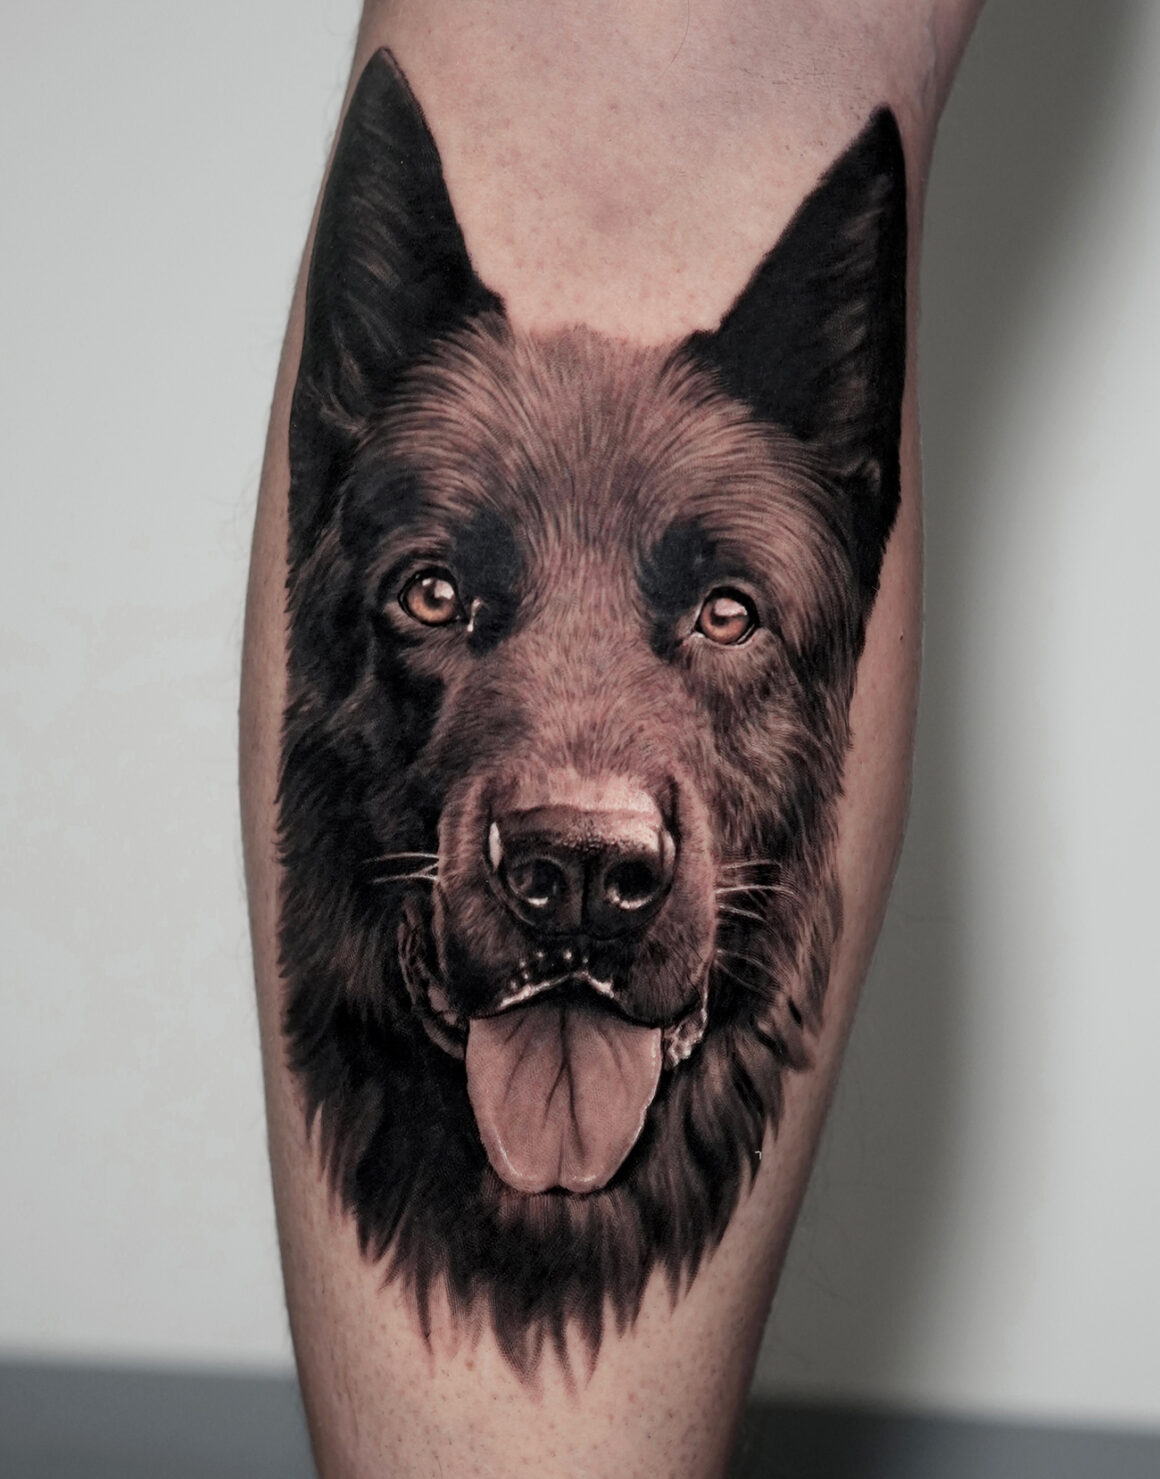 Tattoo by Andrey, German Skull Tattoo, @skulltattoosbadvilbel